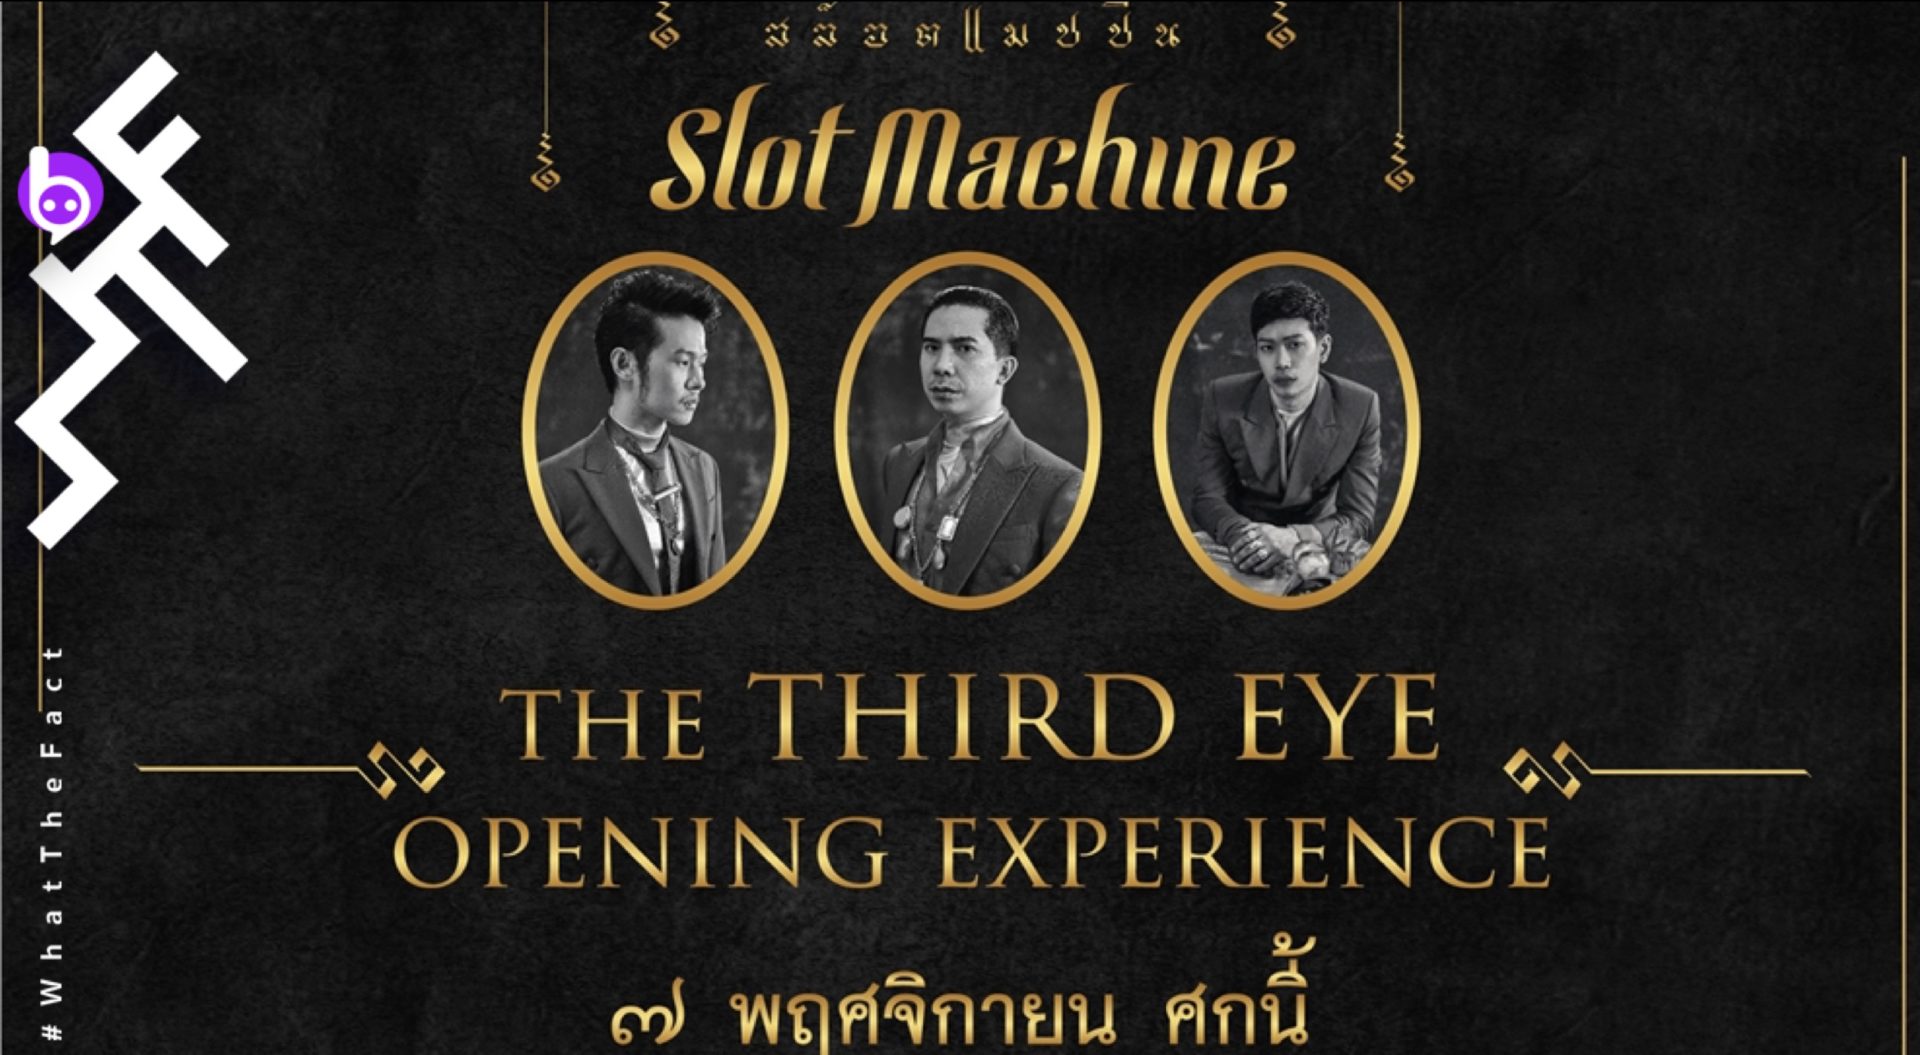 มาสัมผัสประสบการณ์สุดพิเศษกับงานเปิดตัวอัลบั้มชุดใหม่ ‘Third Eye View’ จาก Slot Machine